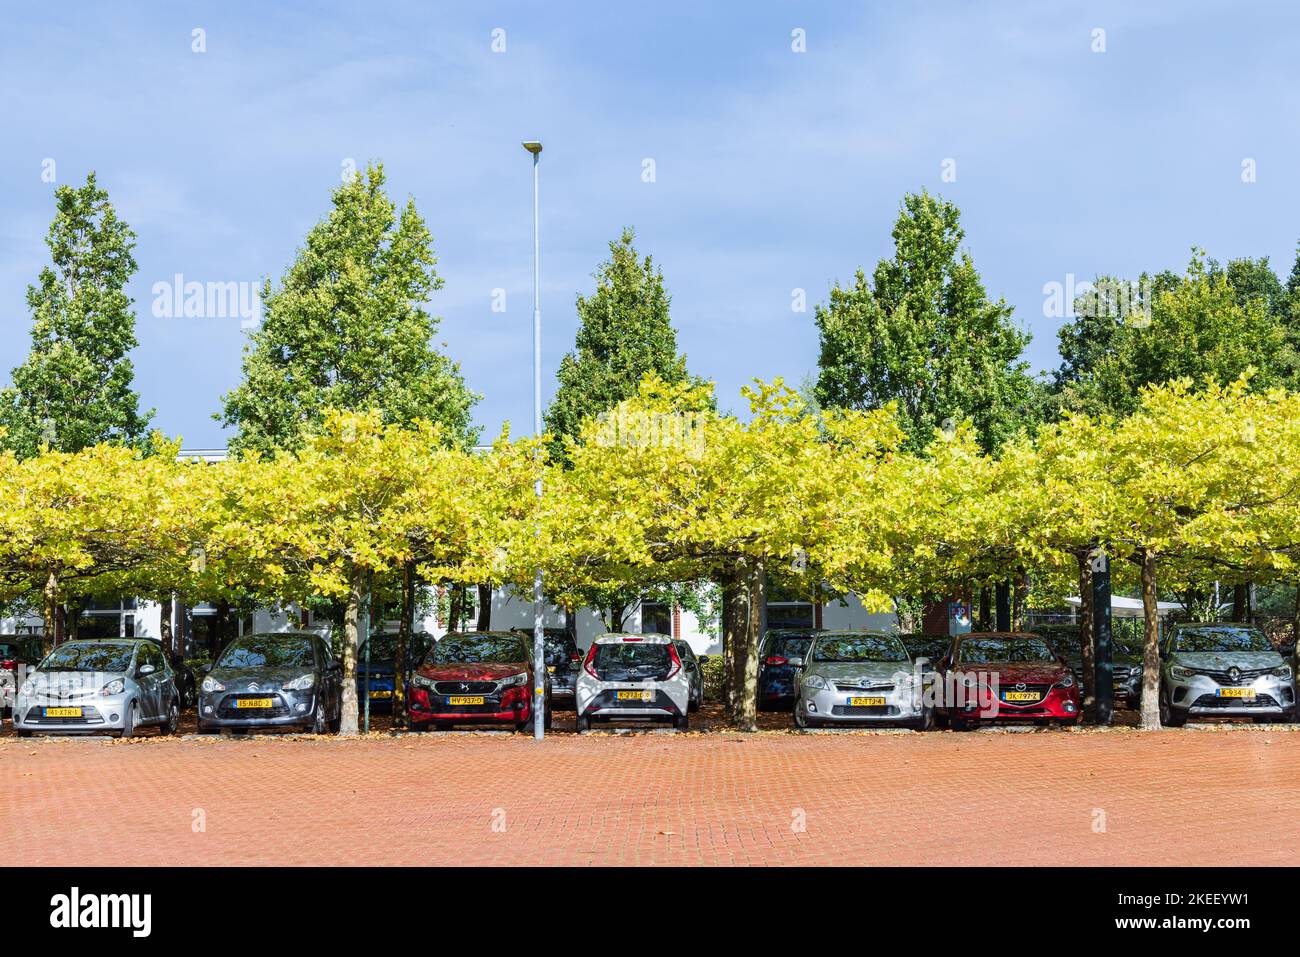 Zuidhorn, pays-Bas - 25 septembre 2022: Hôtel de ville et place de stationnement verte dans la municipalité de Zuidhorn province de Groningen aux pays-Bas Banque D'Images